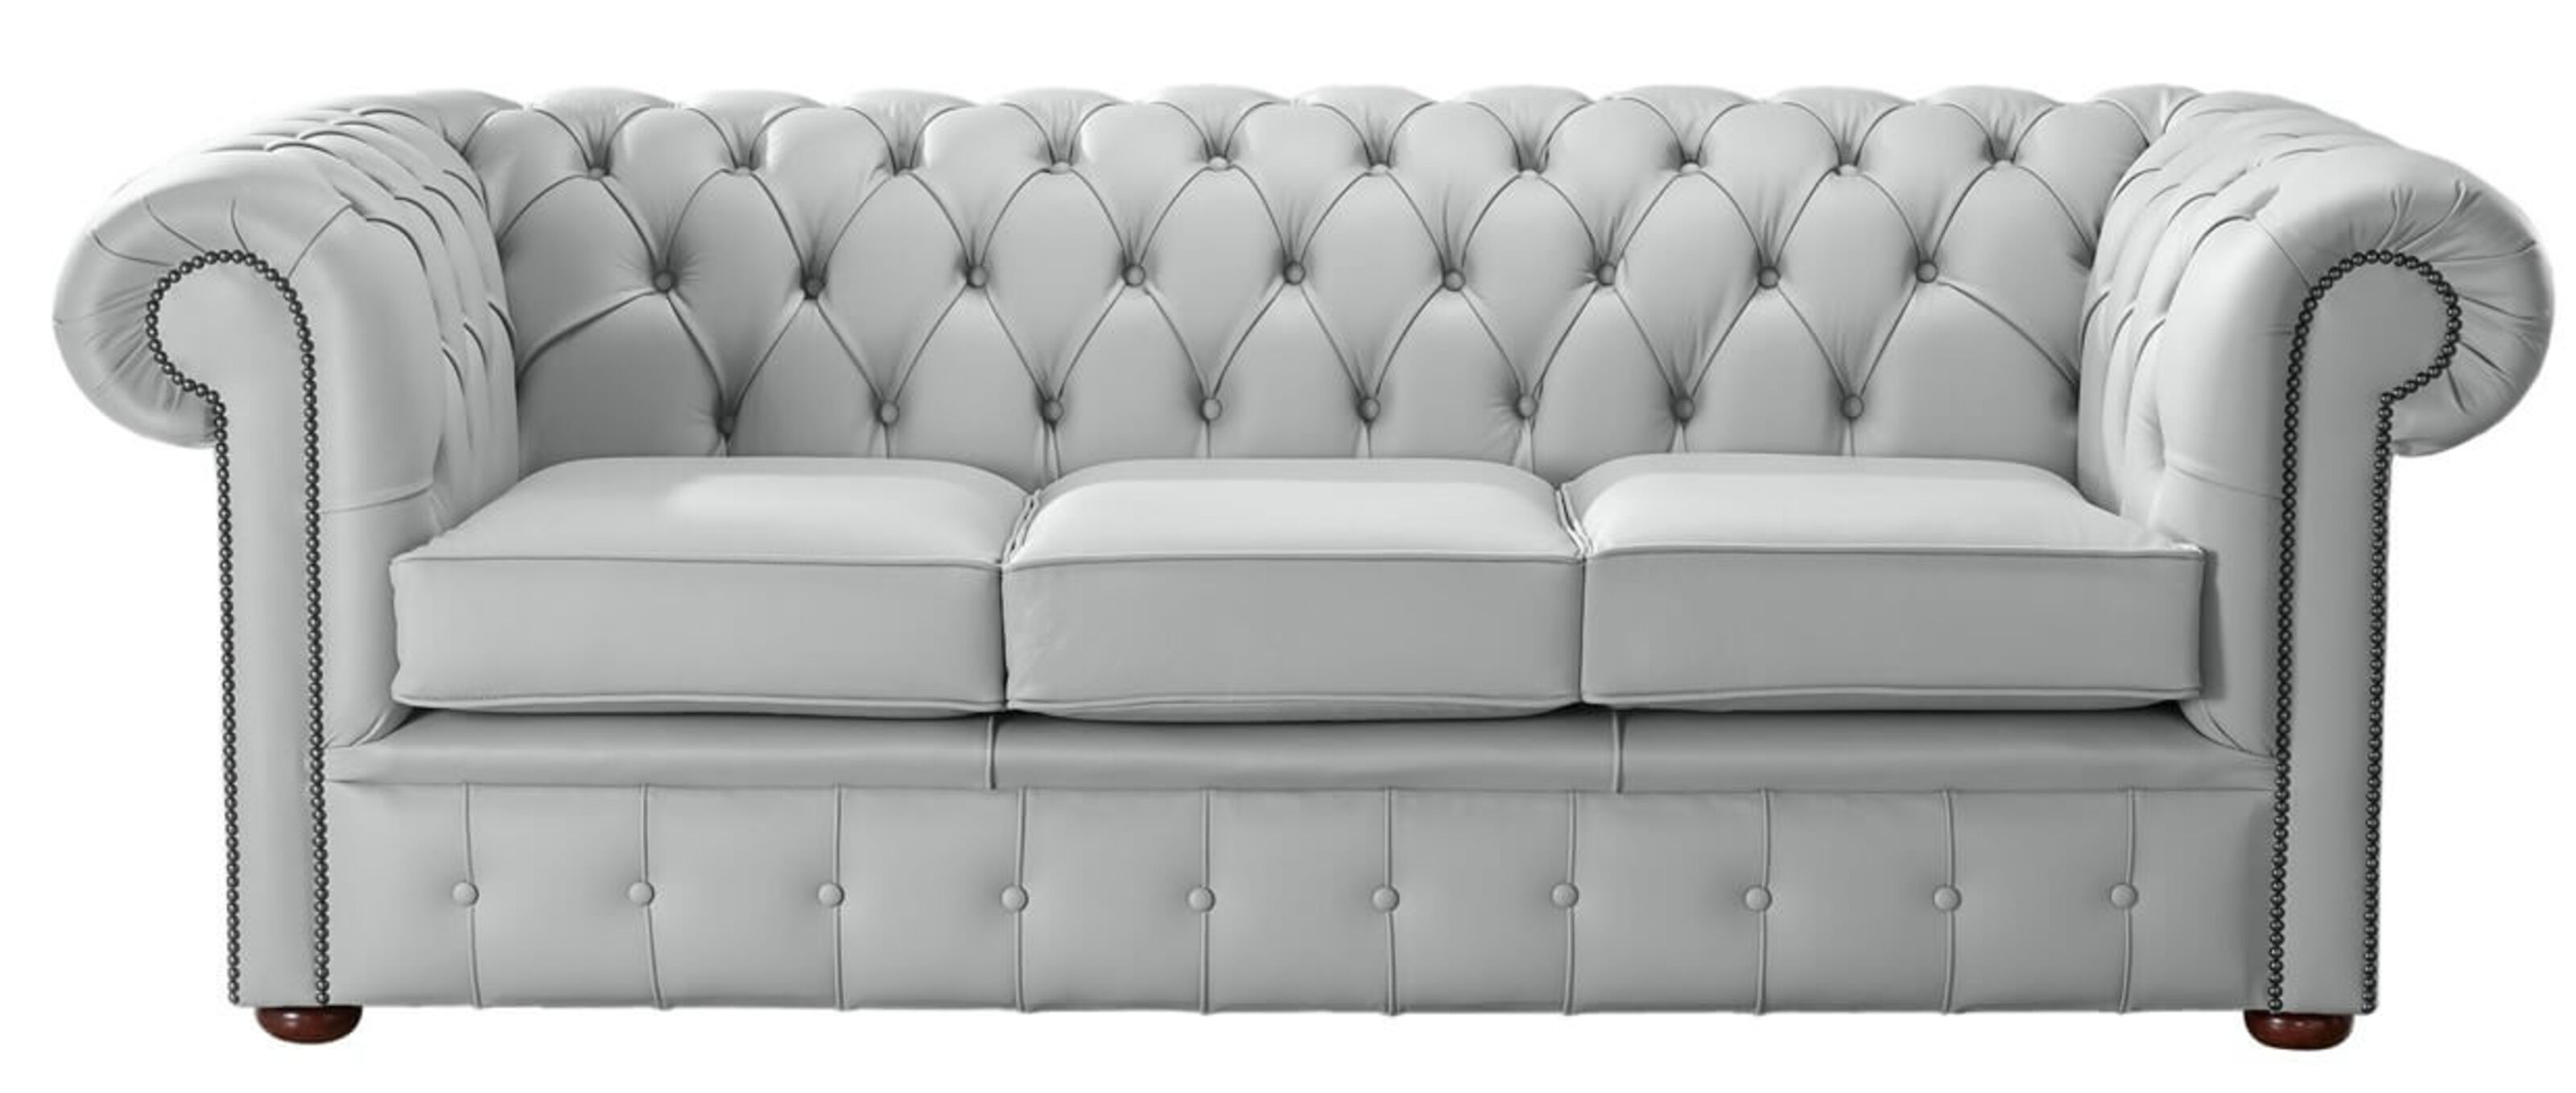 large grey leather sofa